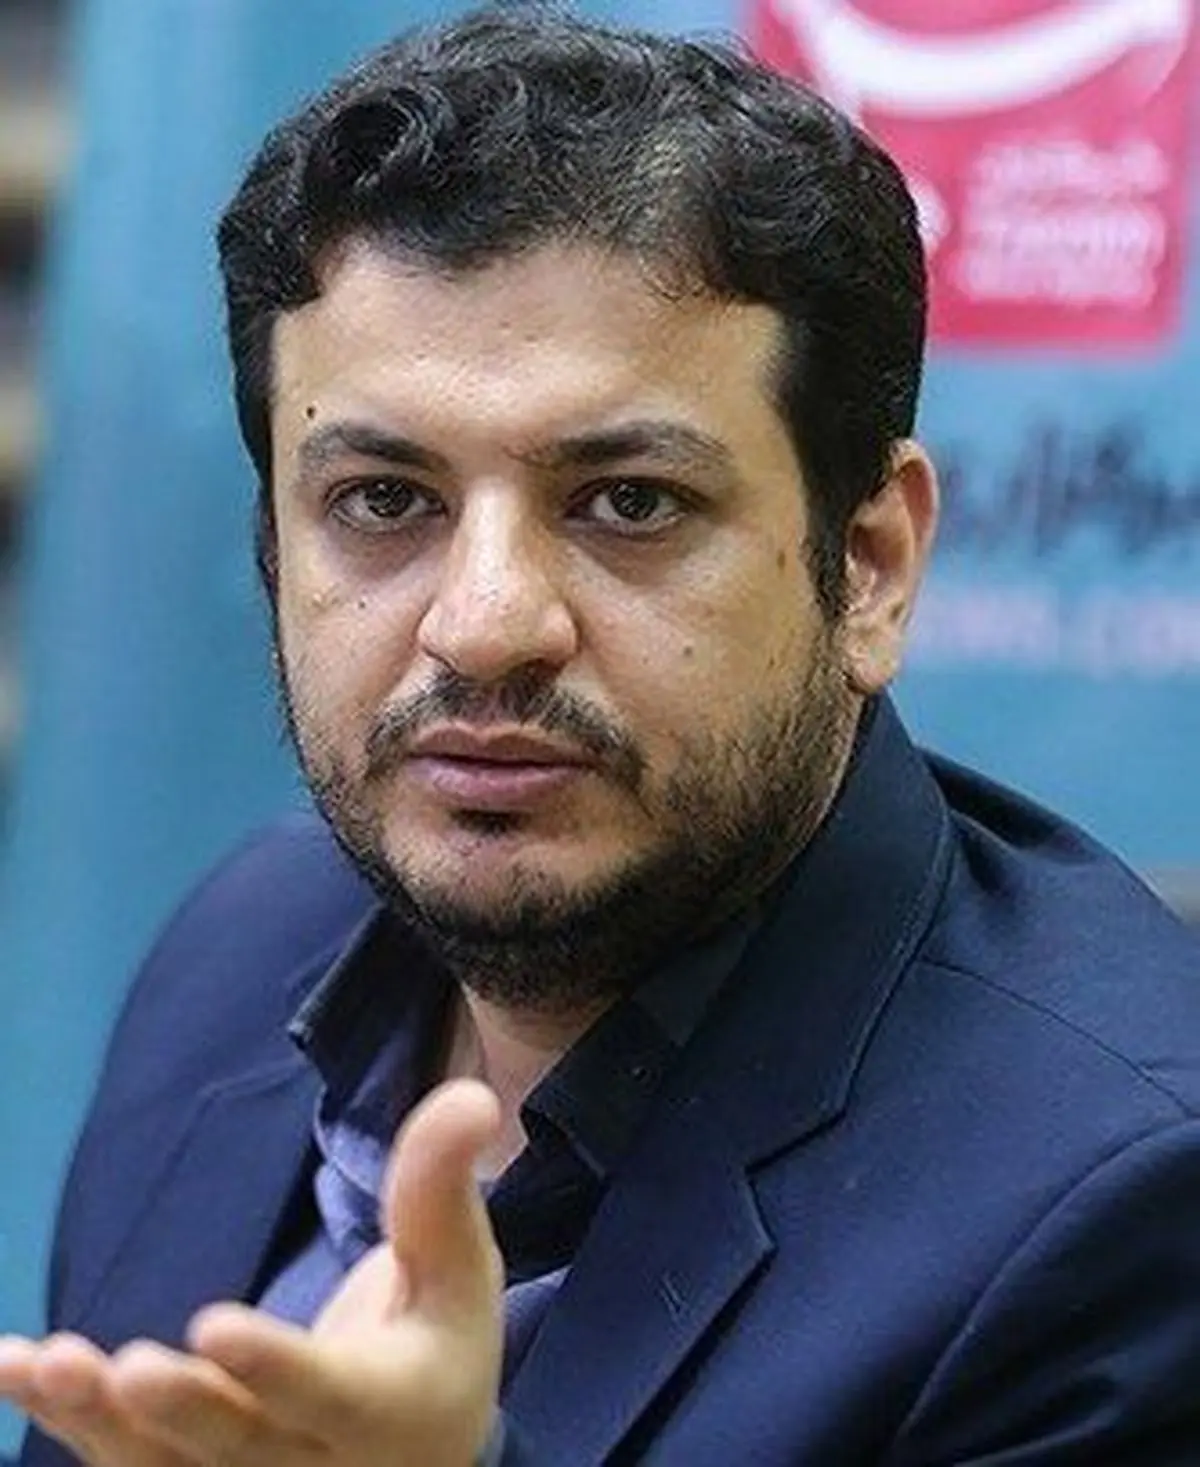 علی اکبر رائفی‌پور به دادسرای تهران دعوت شد | یکی از نمایندگان مجلس ۱۴۰ سکه گرفته و تایید صلاحیت شده